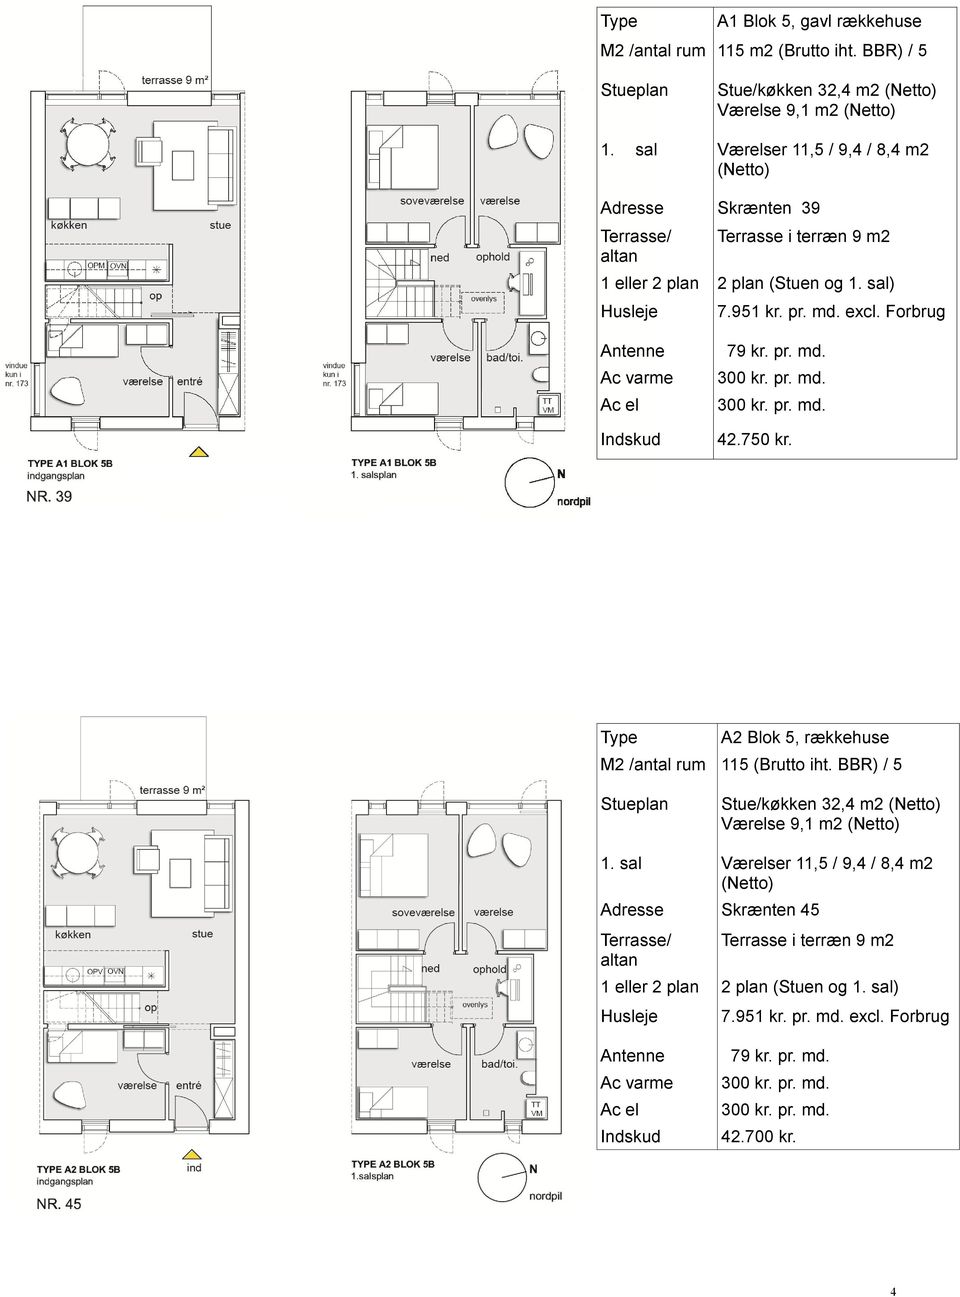 terræn 9 m2 1 eller 2 plan 2 plan (Stuen og 1. sal) 7.951 kr. pr. md. excl. Forbrug Type Stueplan A2 Blok 5, rækkehuse 115 (Brutto iht.